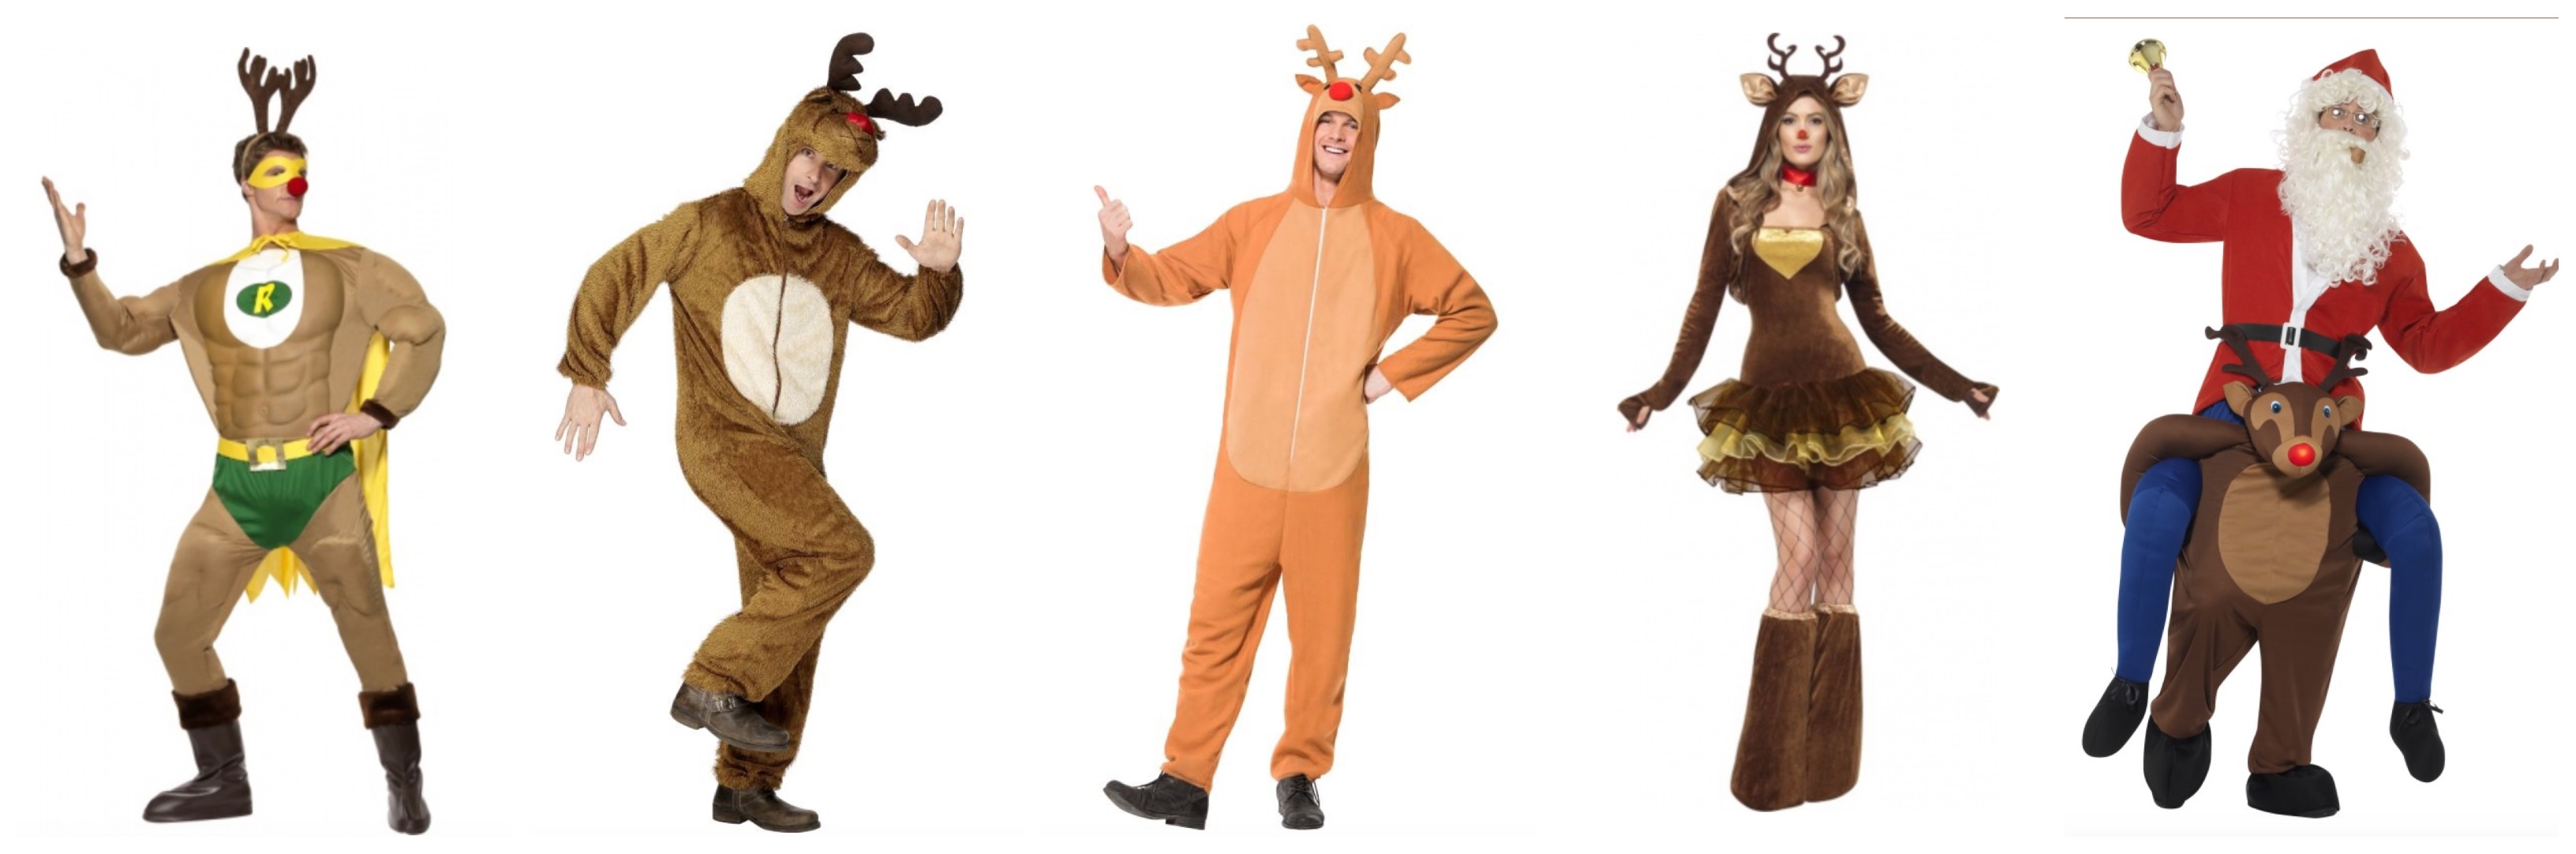 rudolf kostume til voksne - Rudolf kostume til voksne